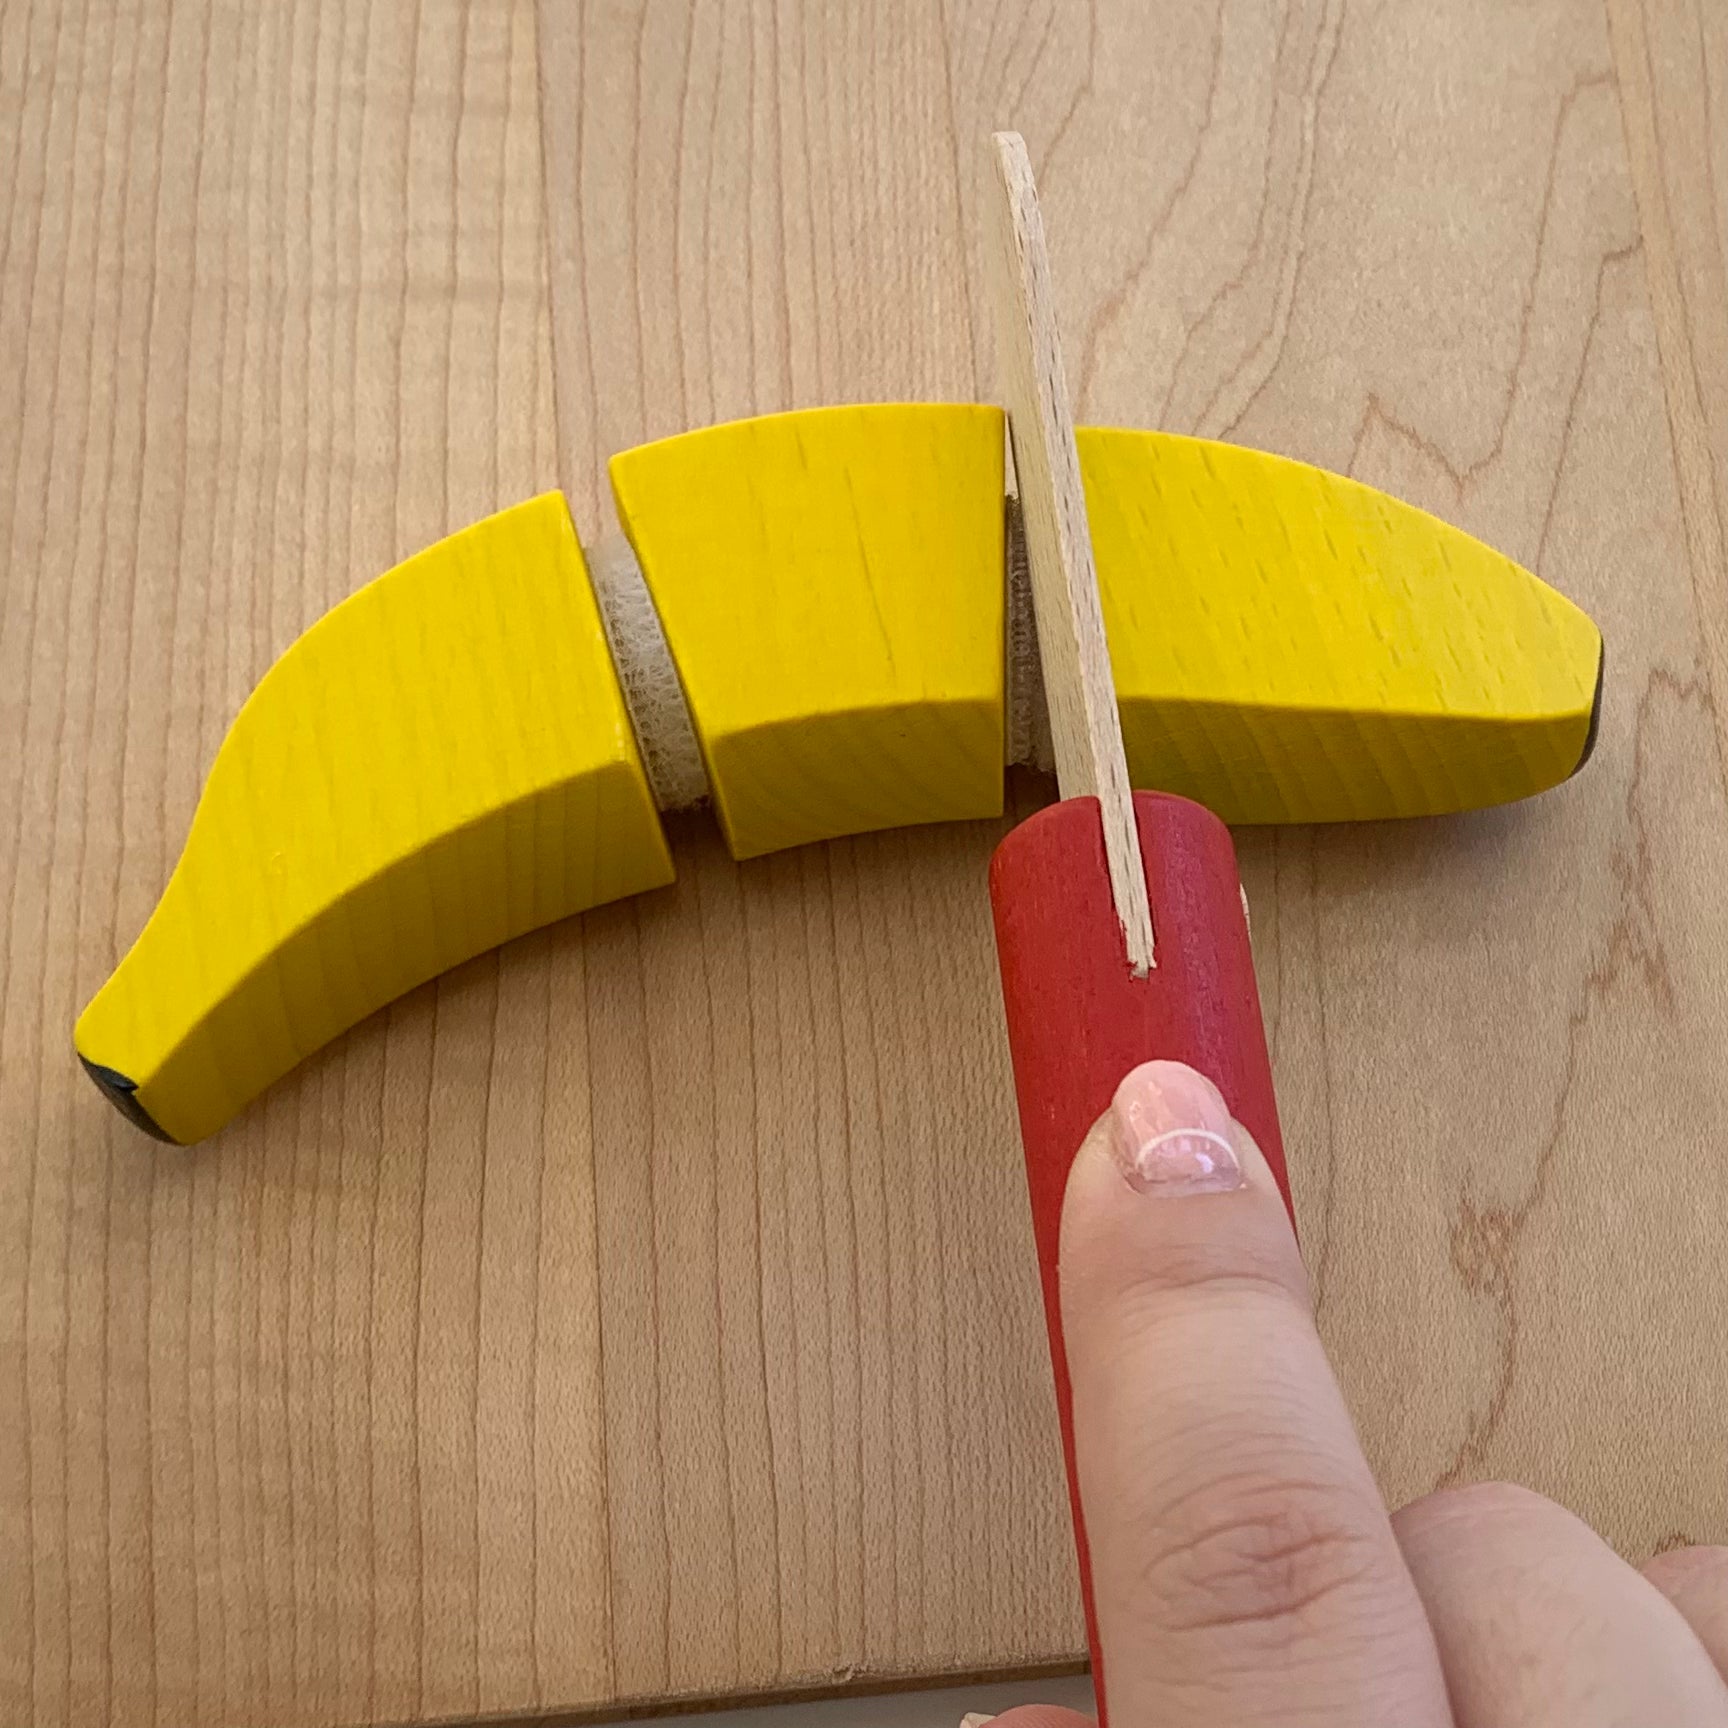 erzi wooden banana to cut